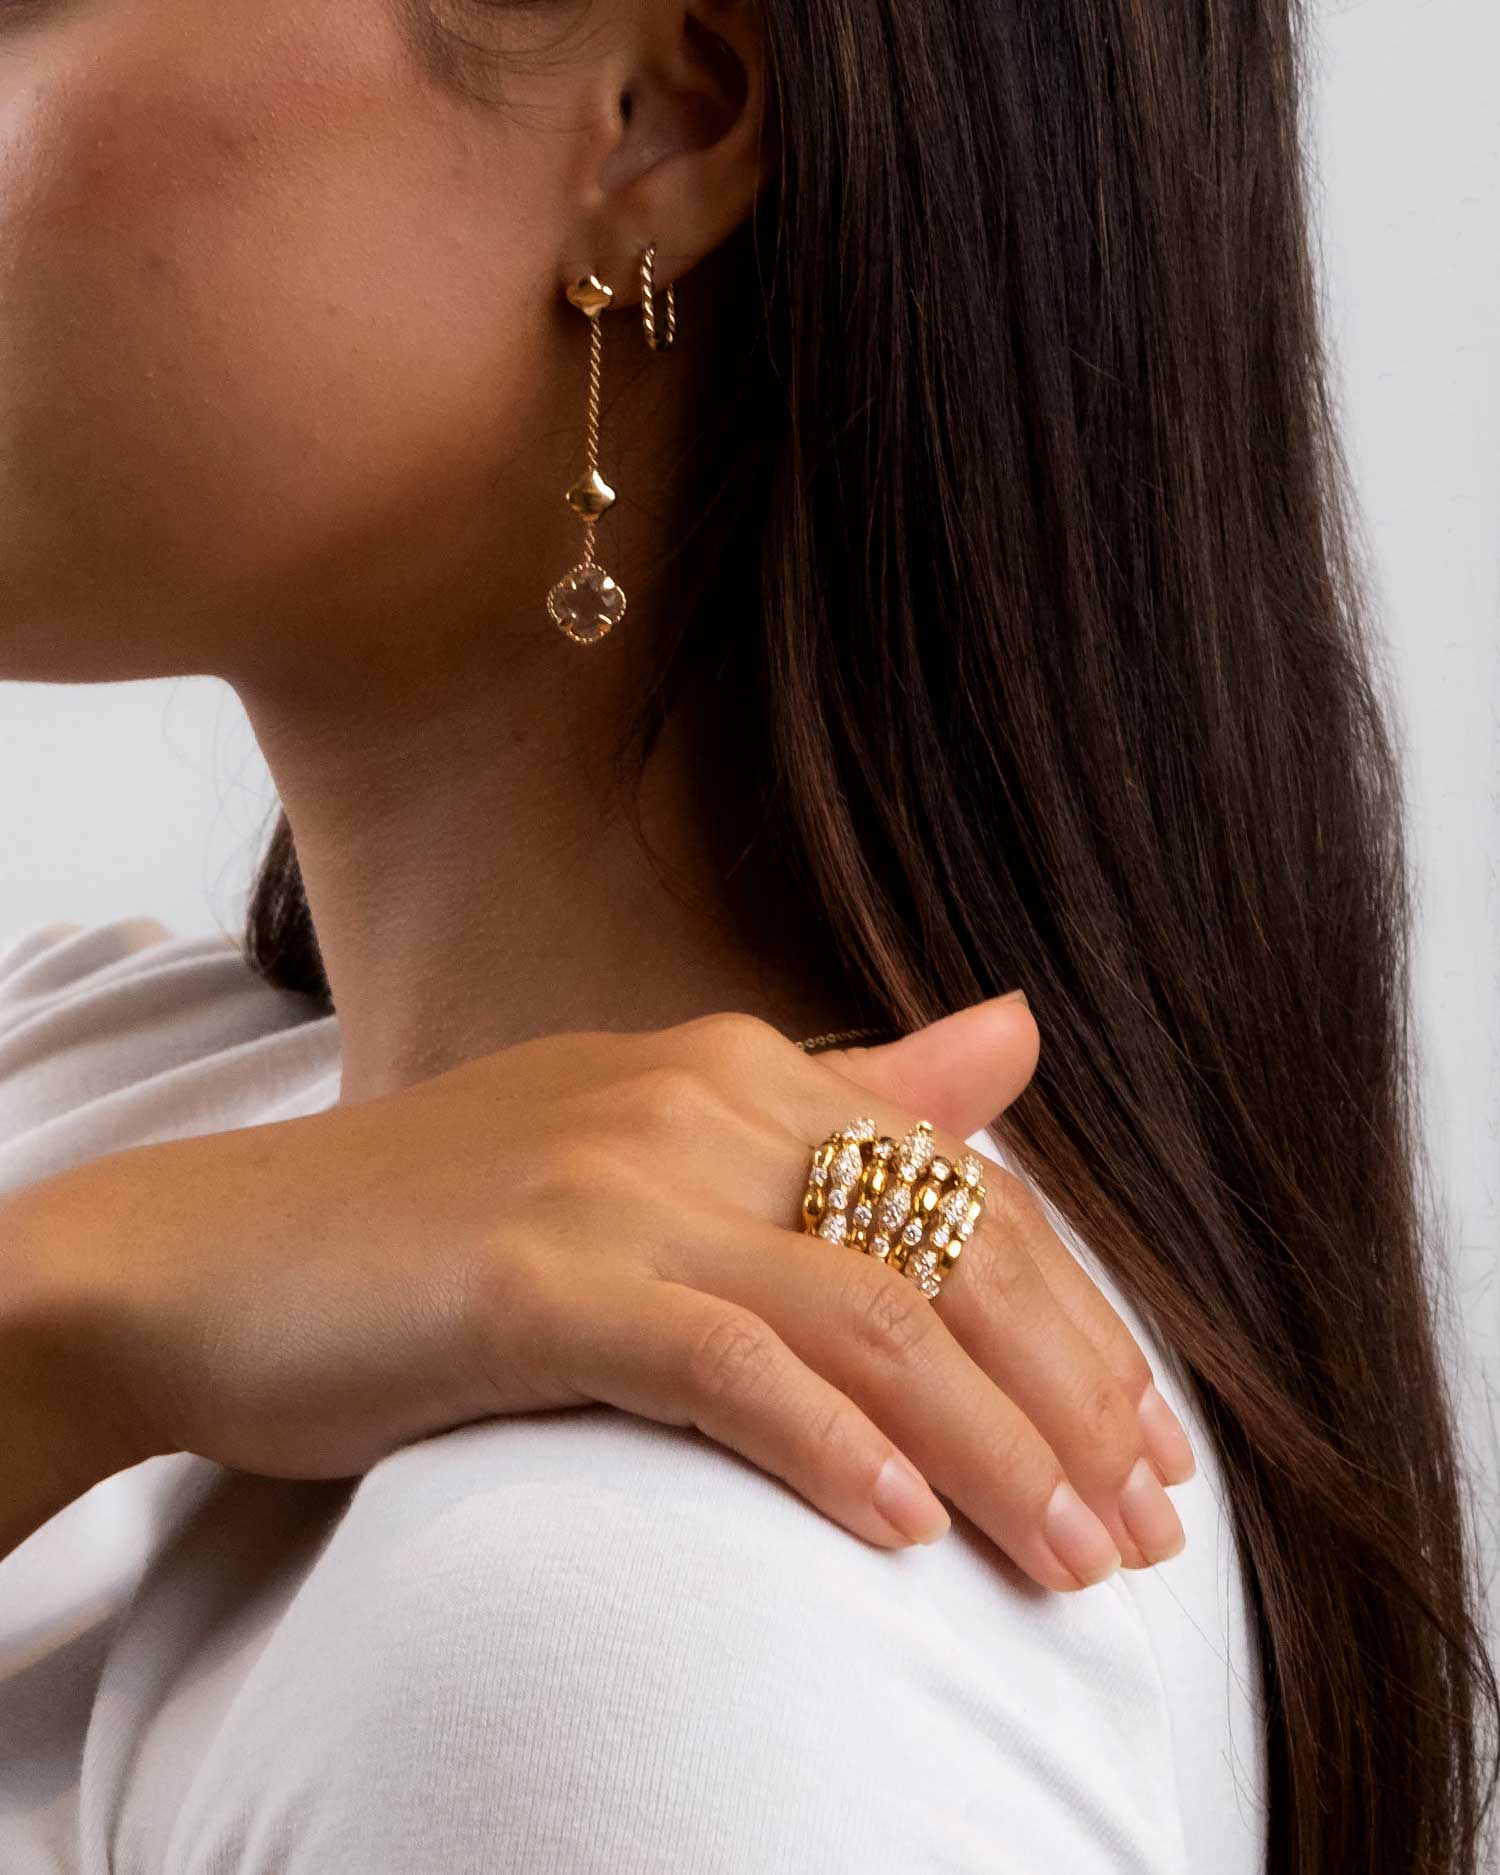 bamboo cascade diamond ring and flower amethyst drop earrings worn by brunette model.